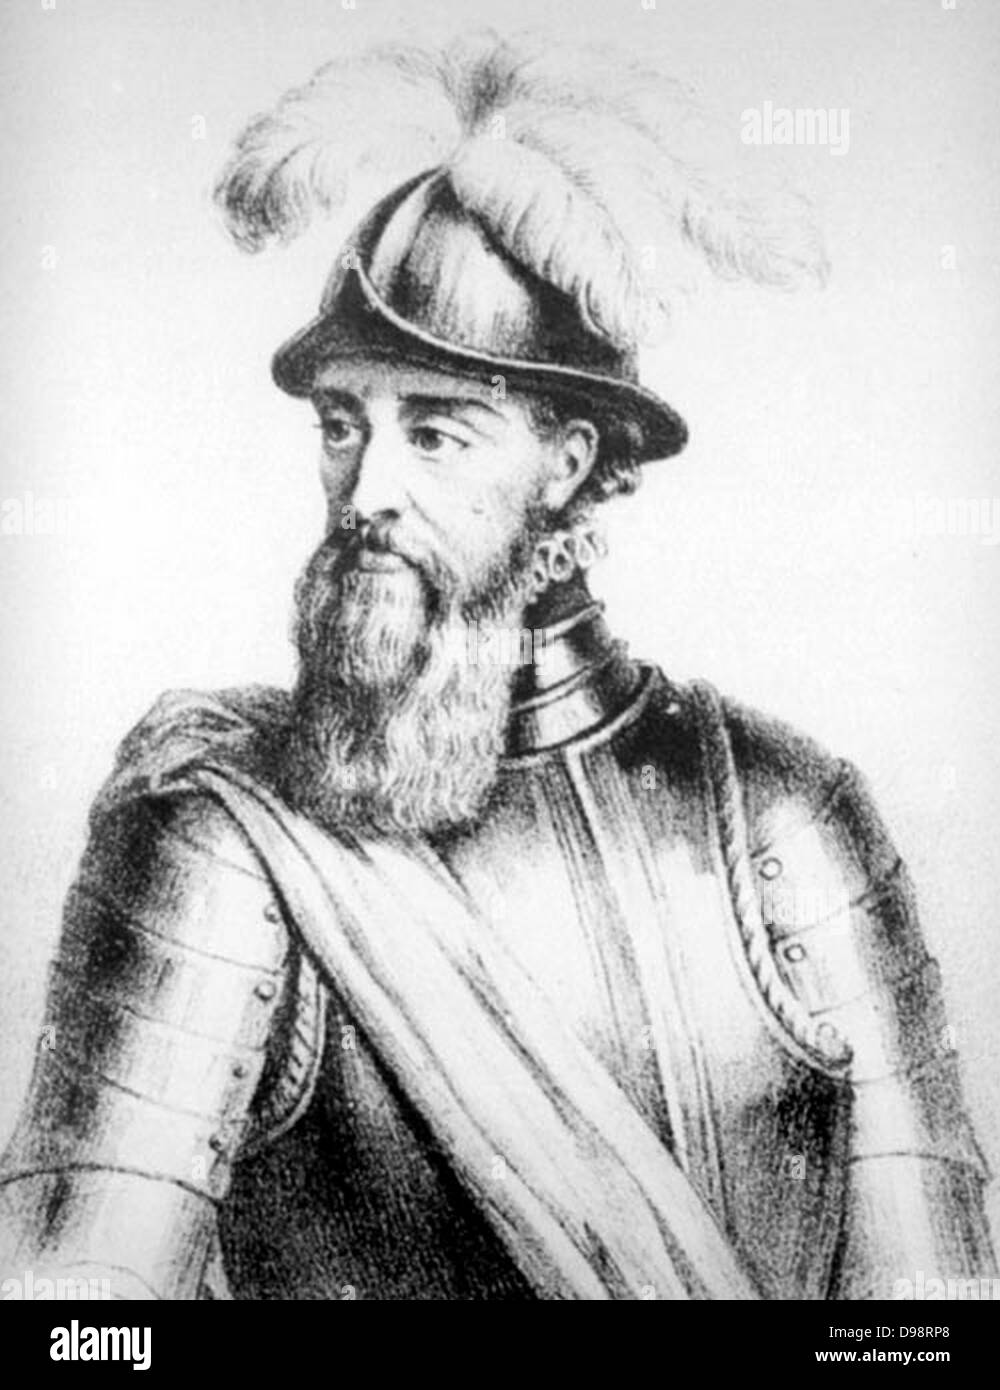 Francisco Pizarro y González, 1° Marqués de los Atabillos (c. 1471 o 1476 - 26 giugno 1541) era un conquistador spagnolo, conquistatore dell'impero Inca e fondatore di Lima. Attraverso il suo padre Francisco era secondo cugino di Hernán Cortés, il famoso conquistador del Messico. Foto Stock